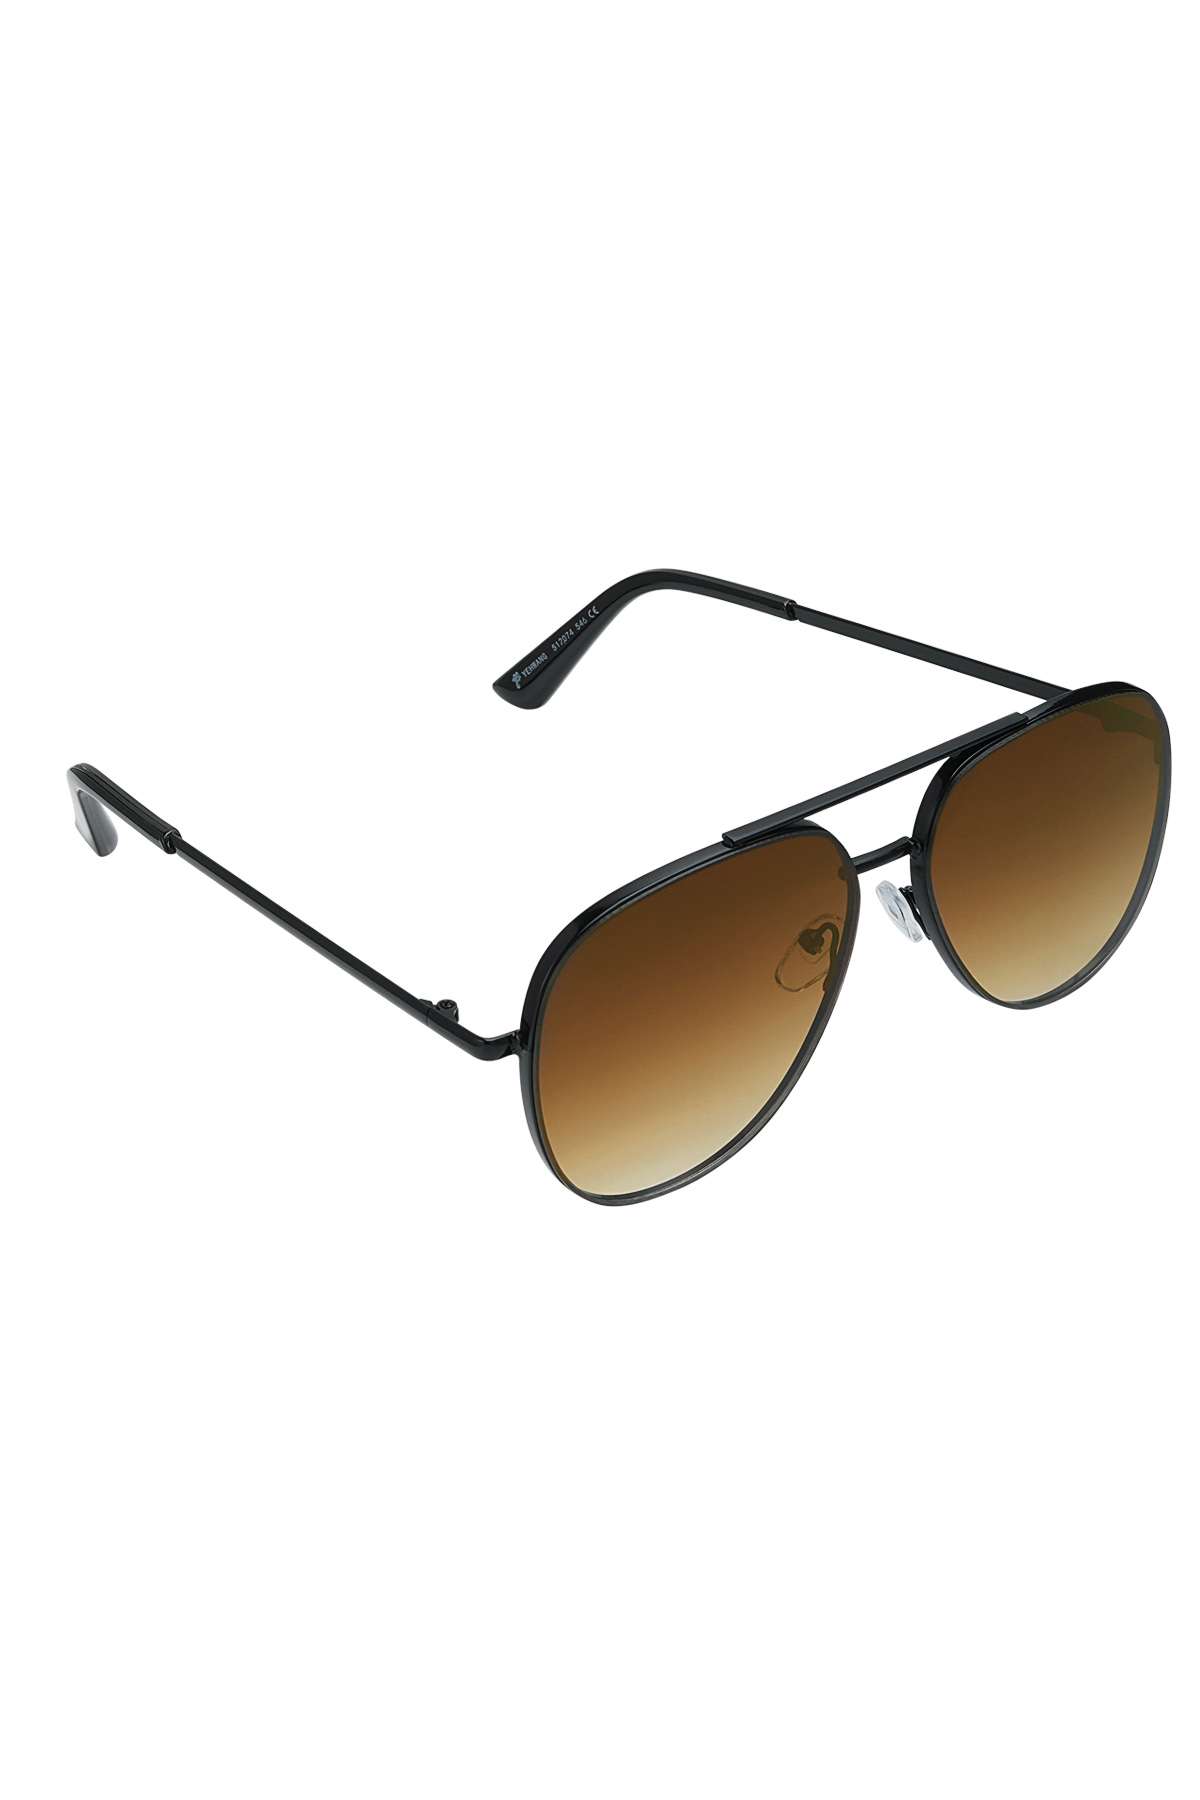 Pilot sunglasses - brown/black